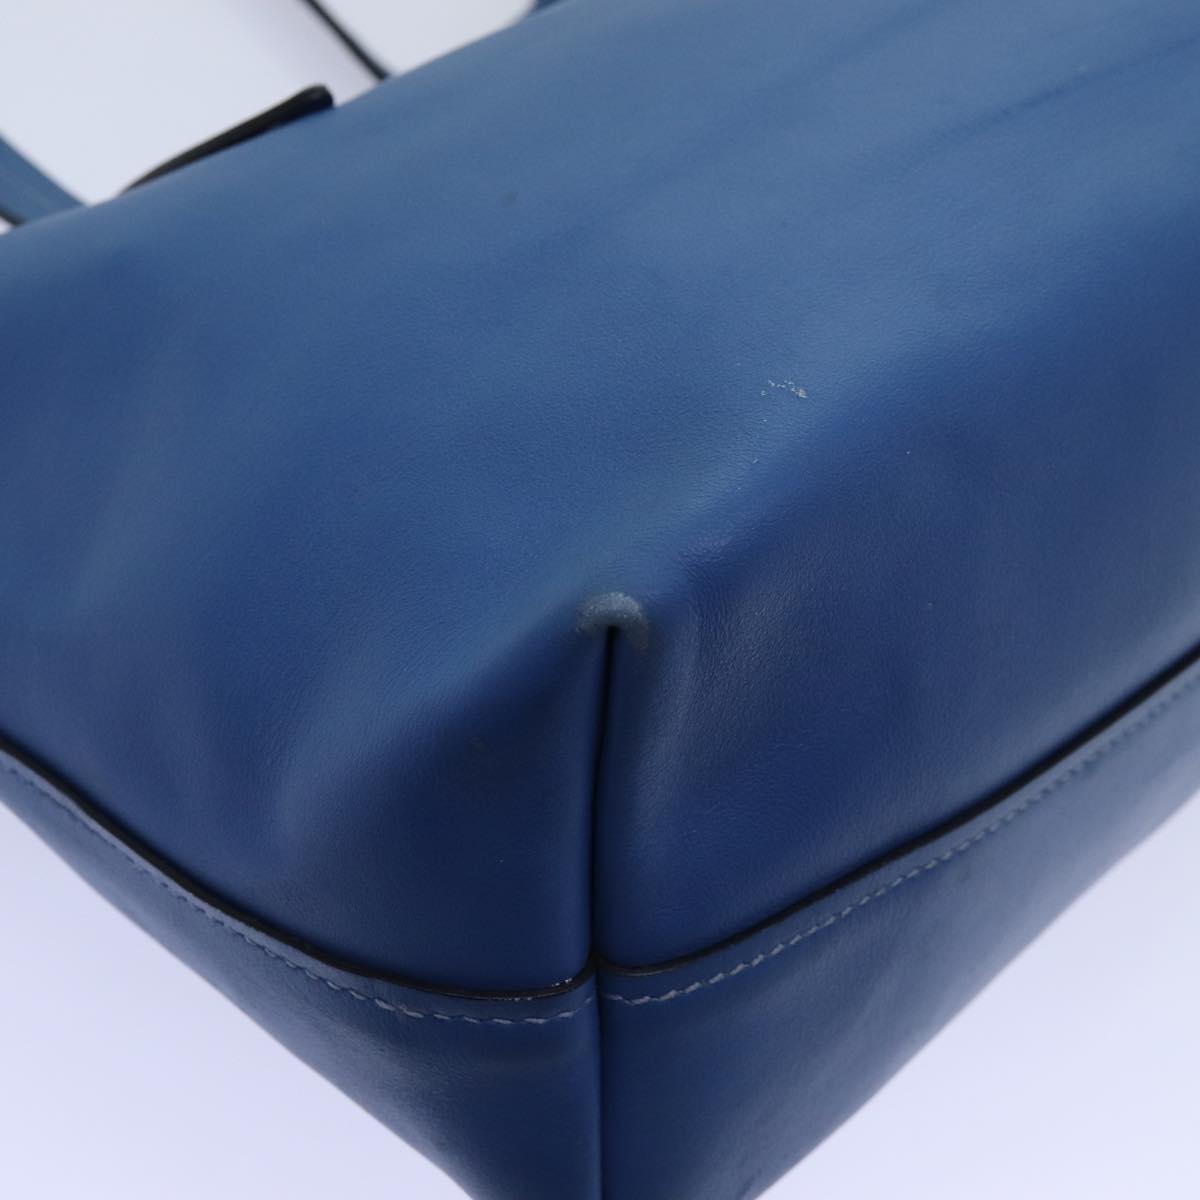 Miu Miu Tote Bag Leather Blue Auth hk1226